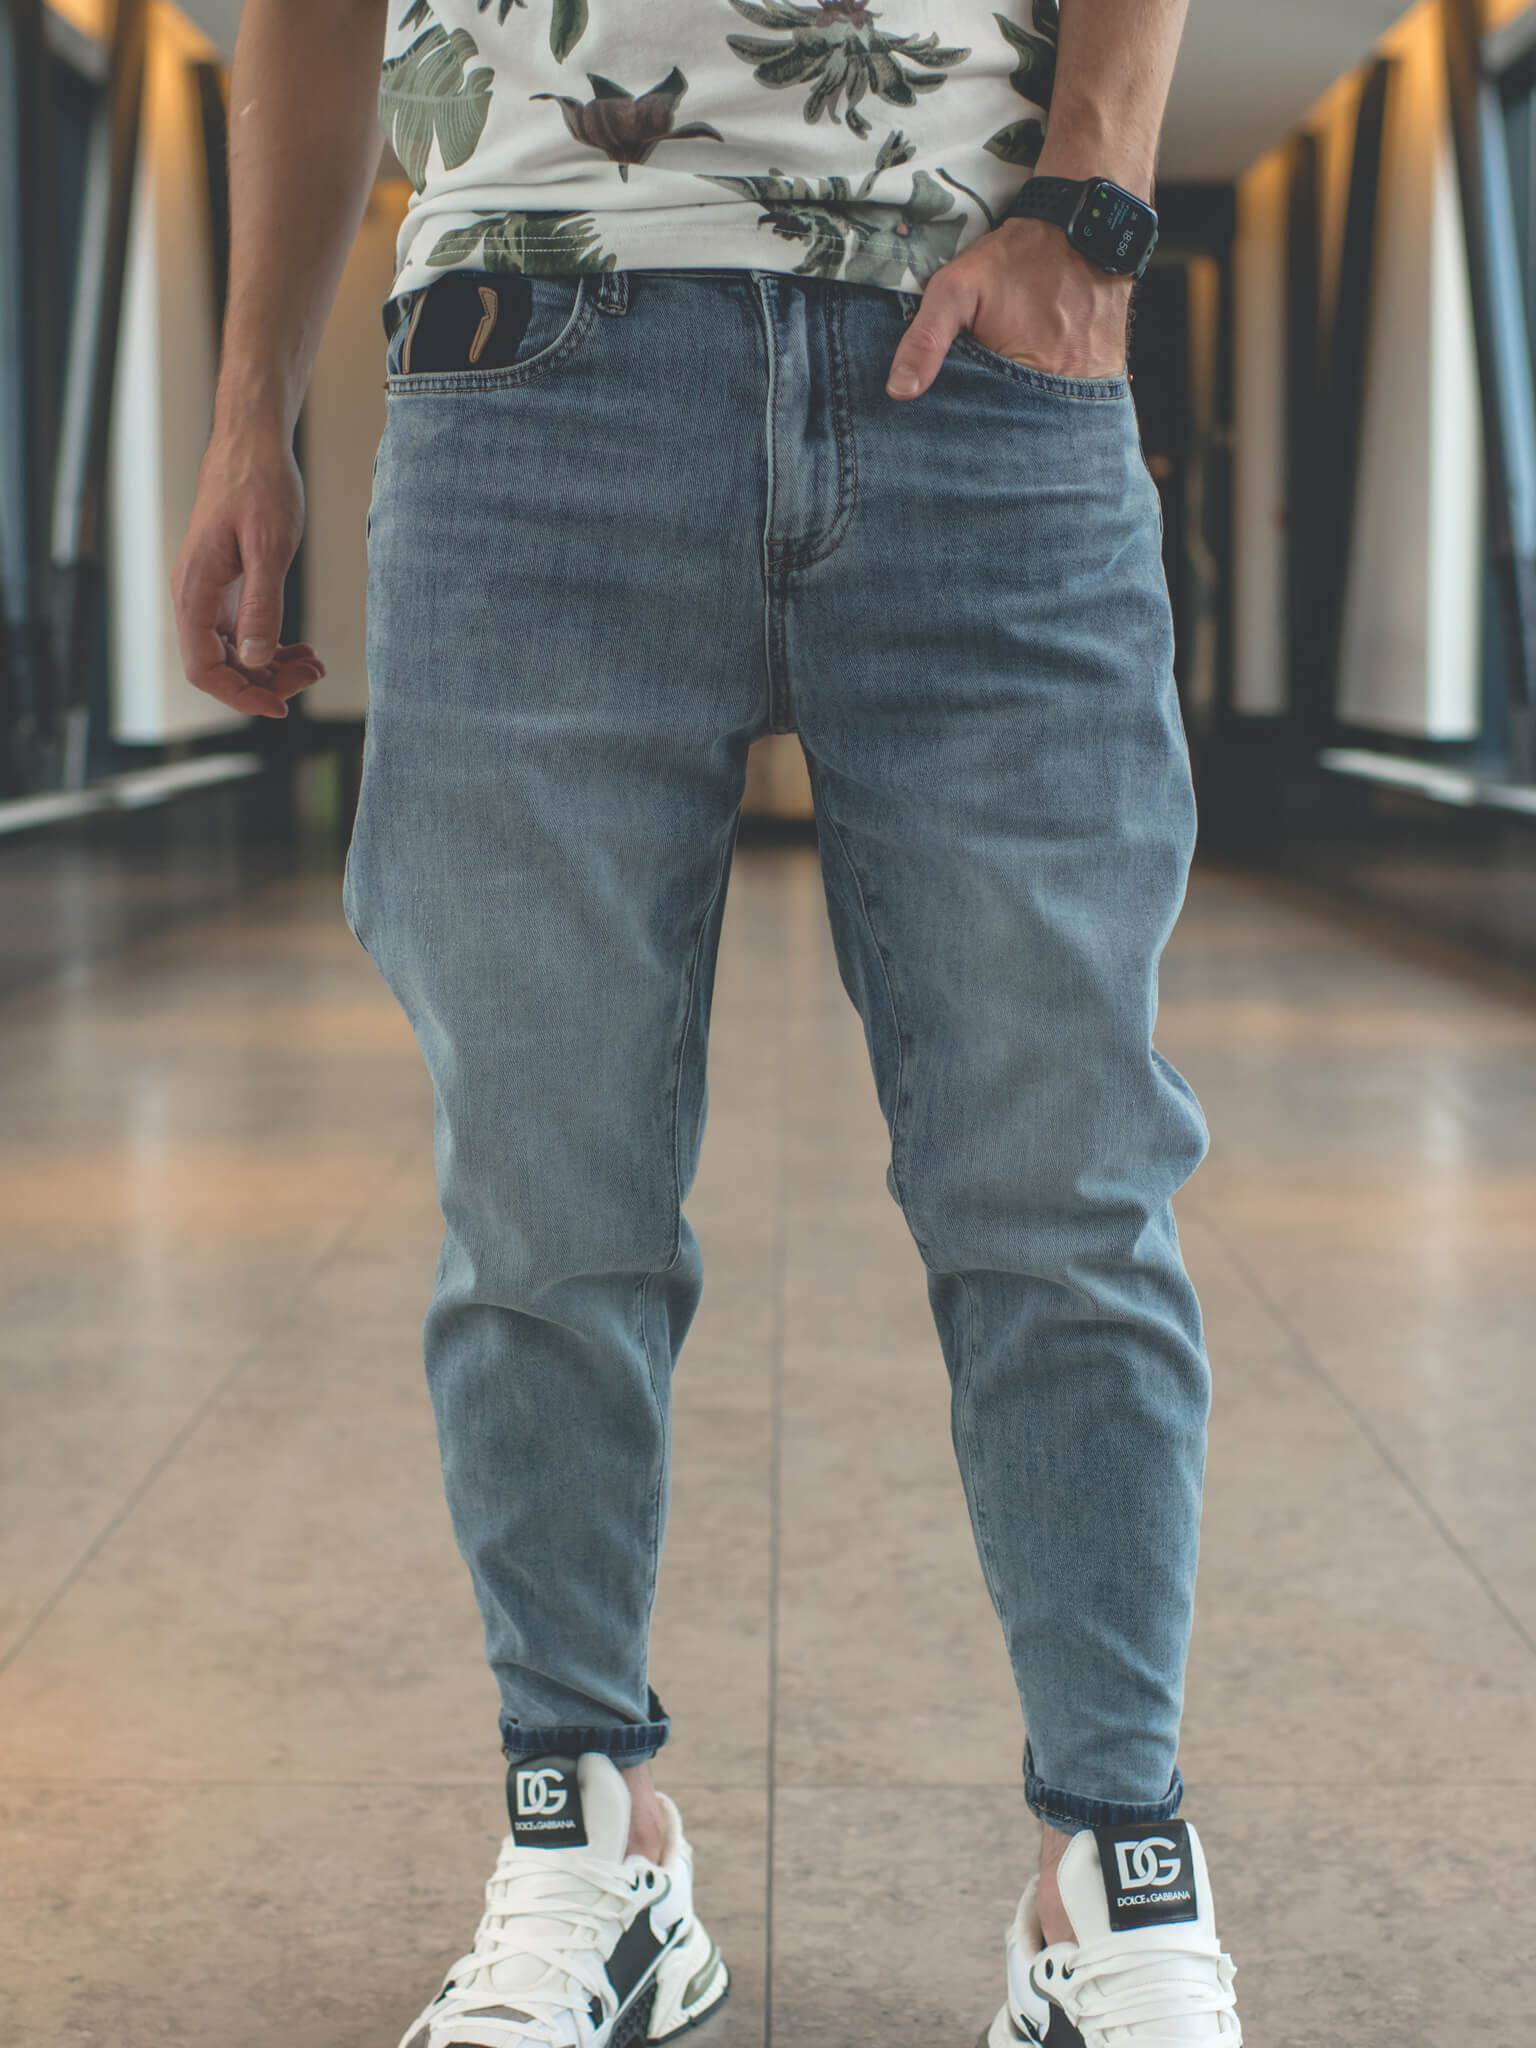 Как красиво и правильно подвернуть джинсы: советы стилистов